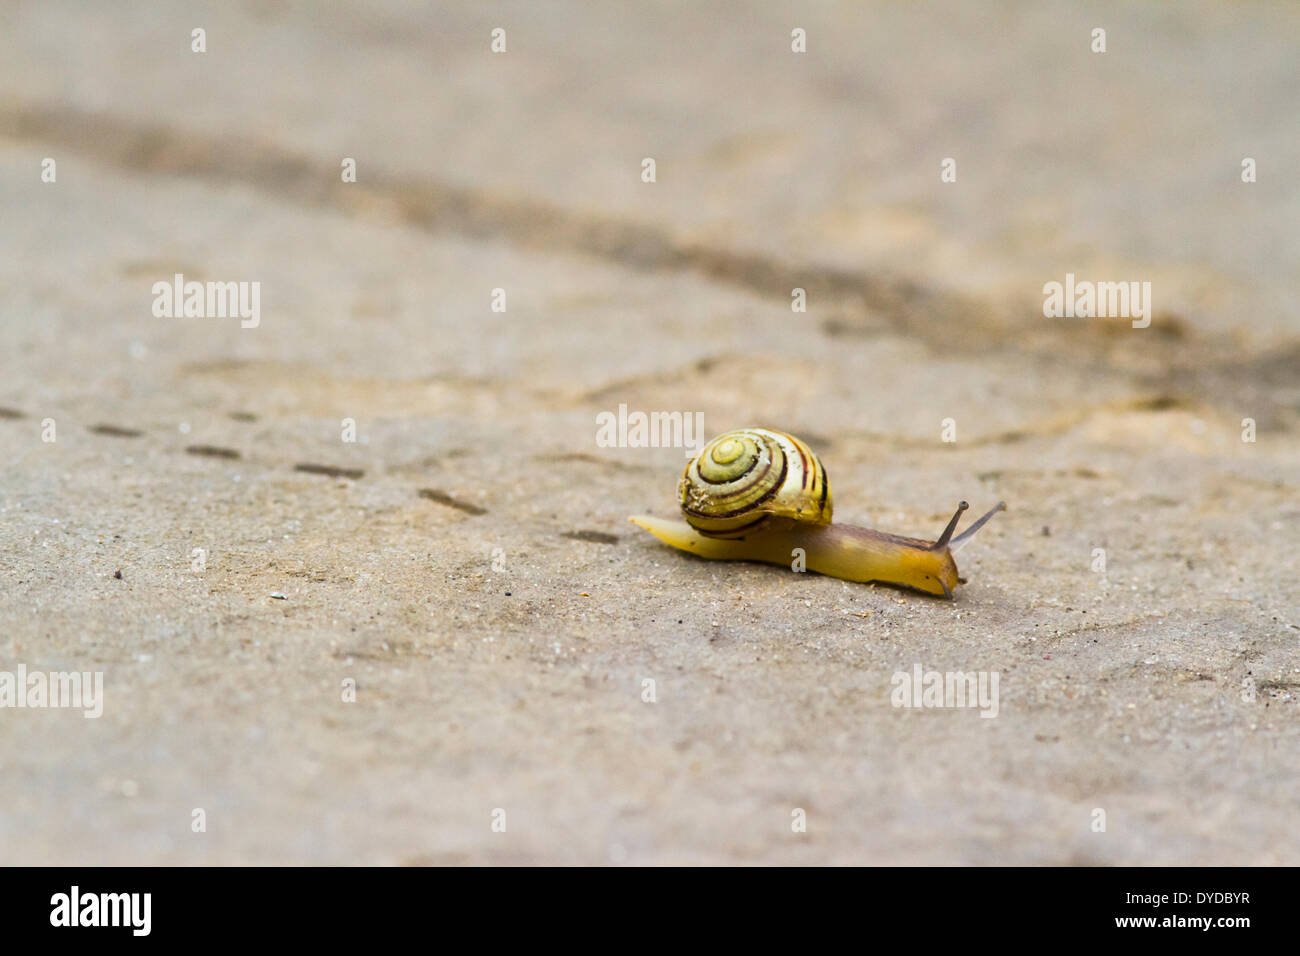 Un escargot laisse des empreintes de pas qu'elle se hisse sur un pavé. Banque D'Images